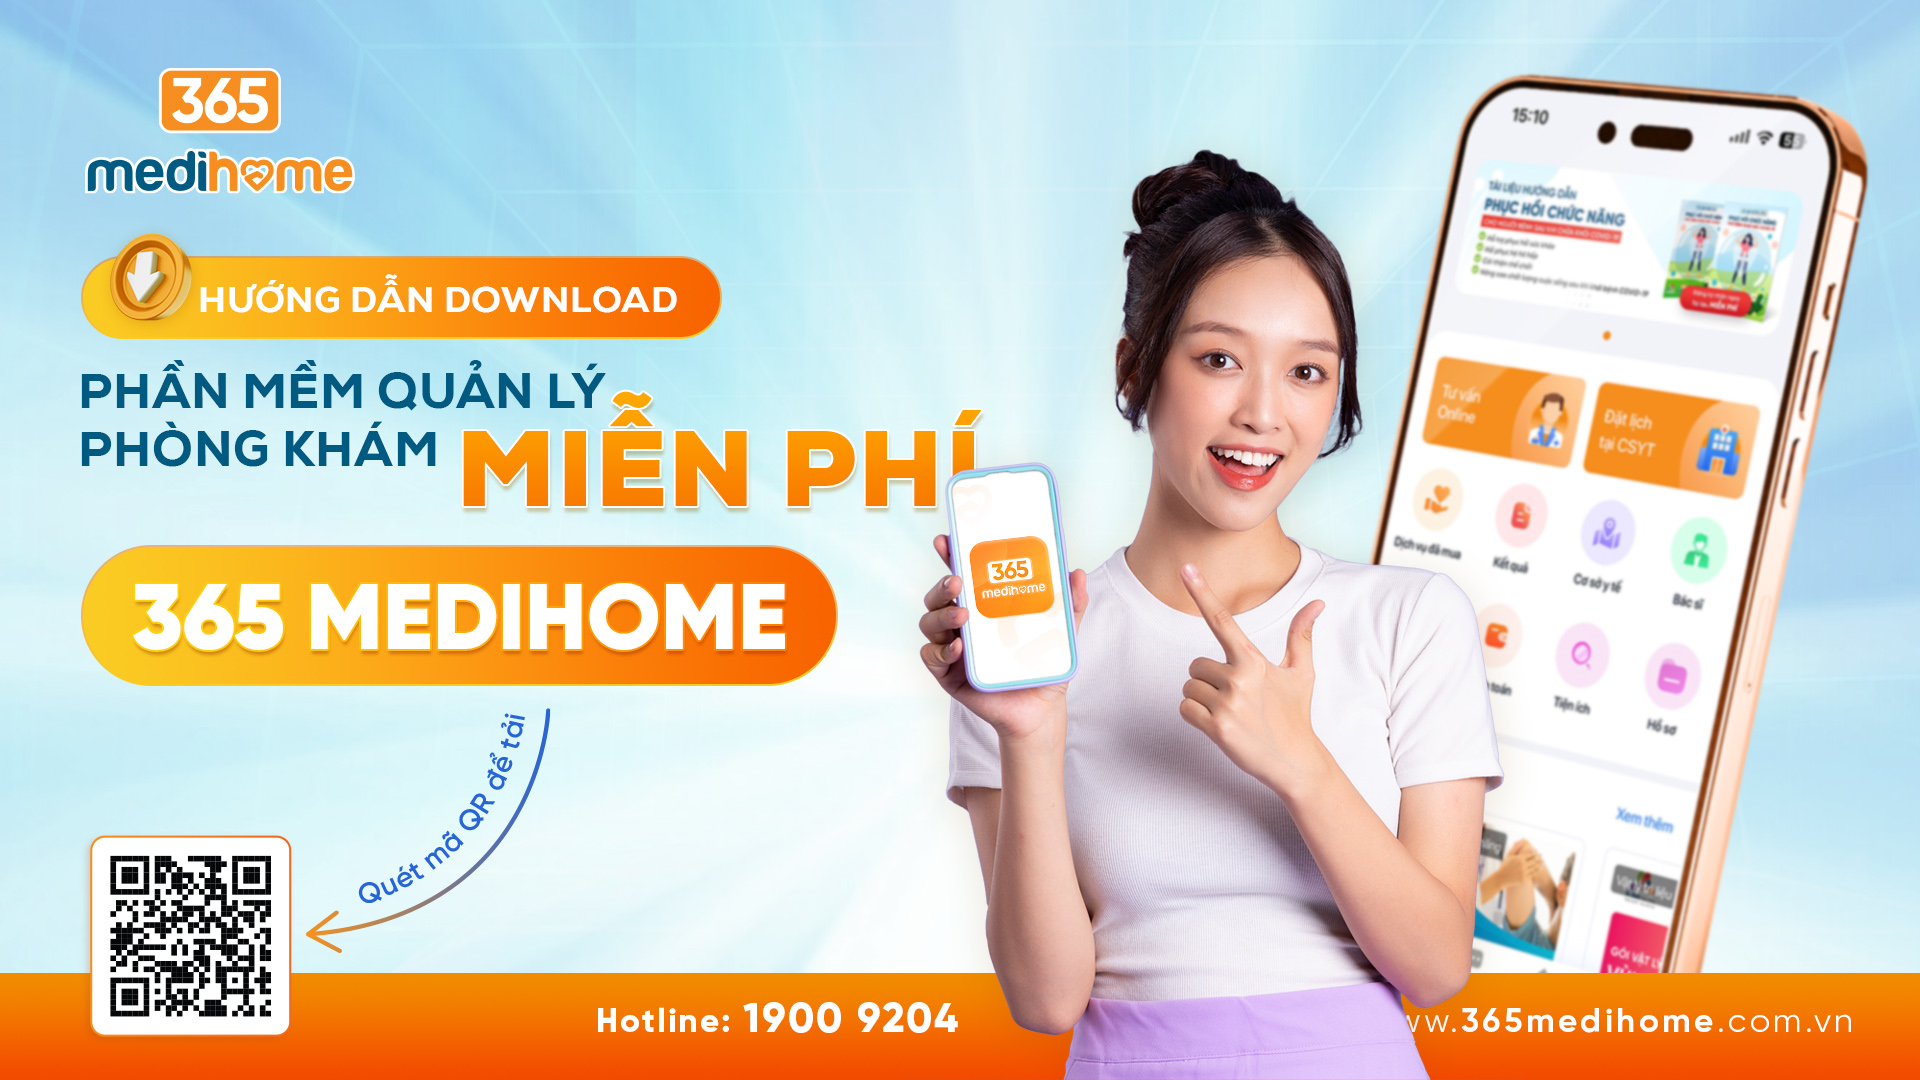 Huong dan download phan mem quan ly PK Mien phi